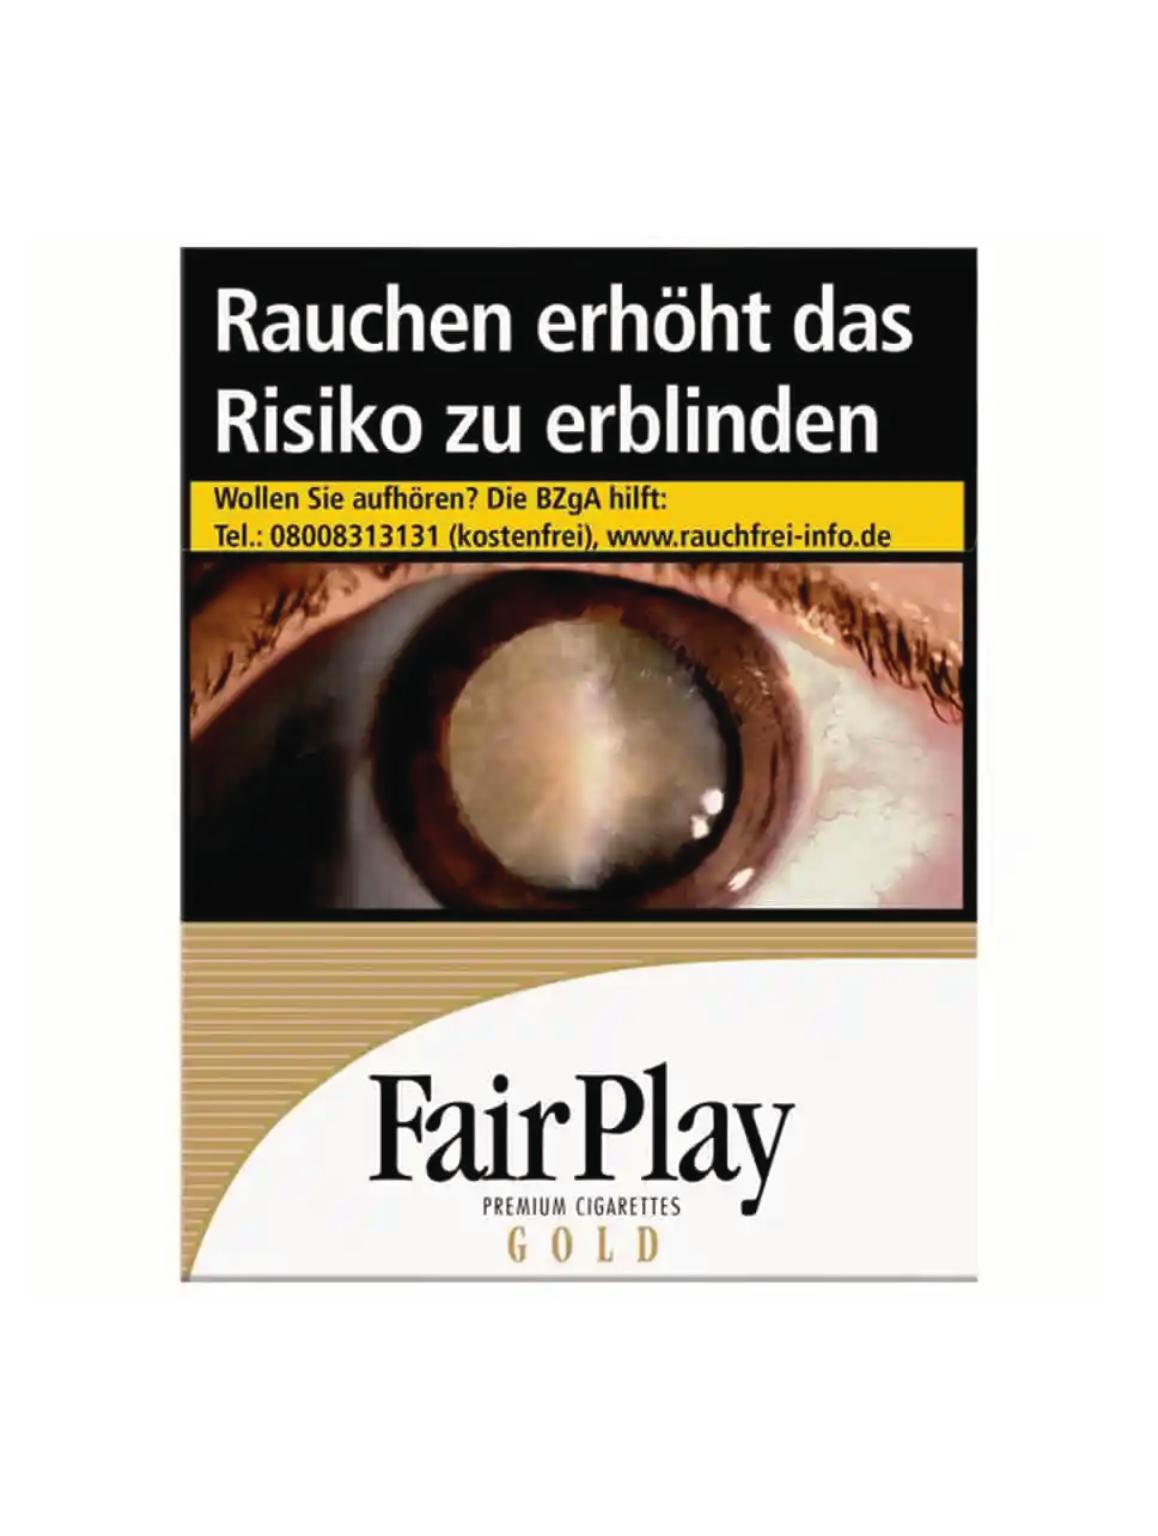 Fair Play Gold XXL Zigaretten 1 Packung